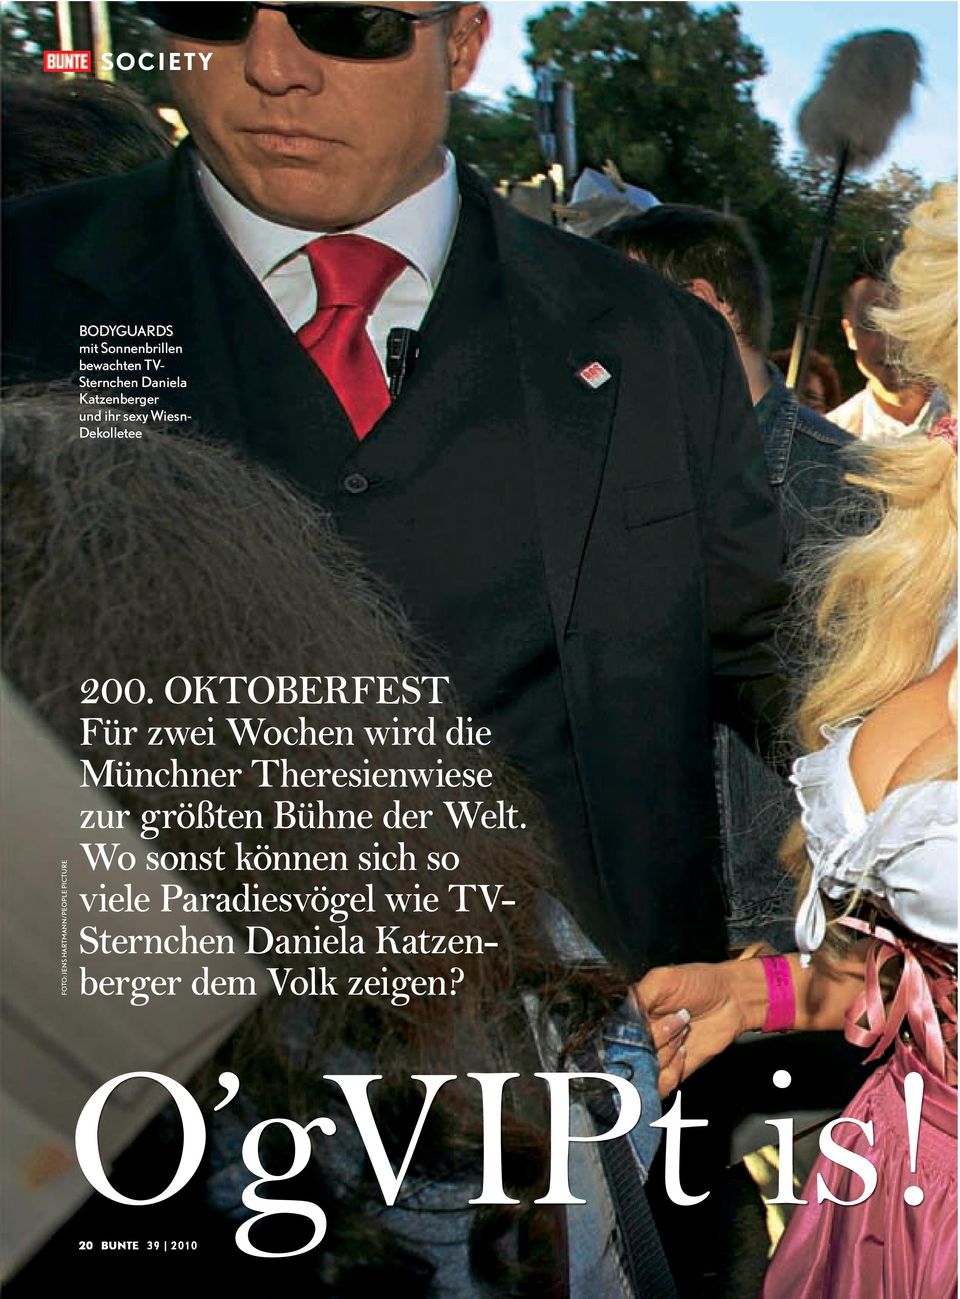 OKTOBERFEST Für zwei Wochen wird die Münchner Theresienwiese zur größten Bühne der Welt.